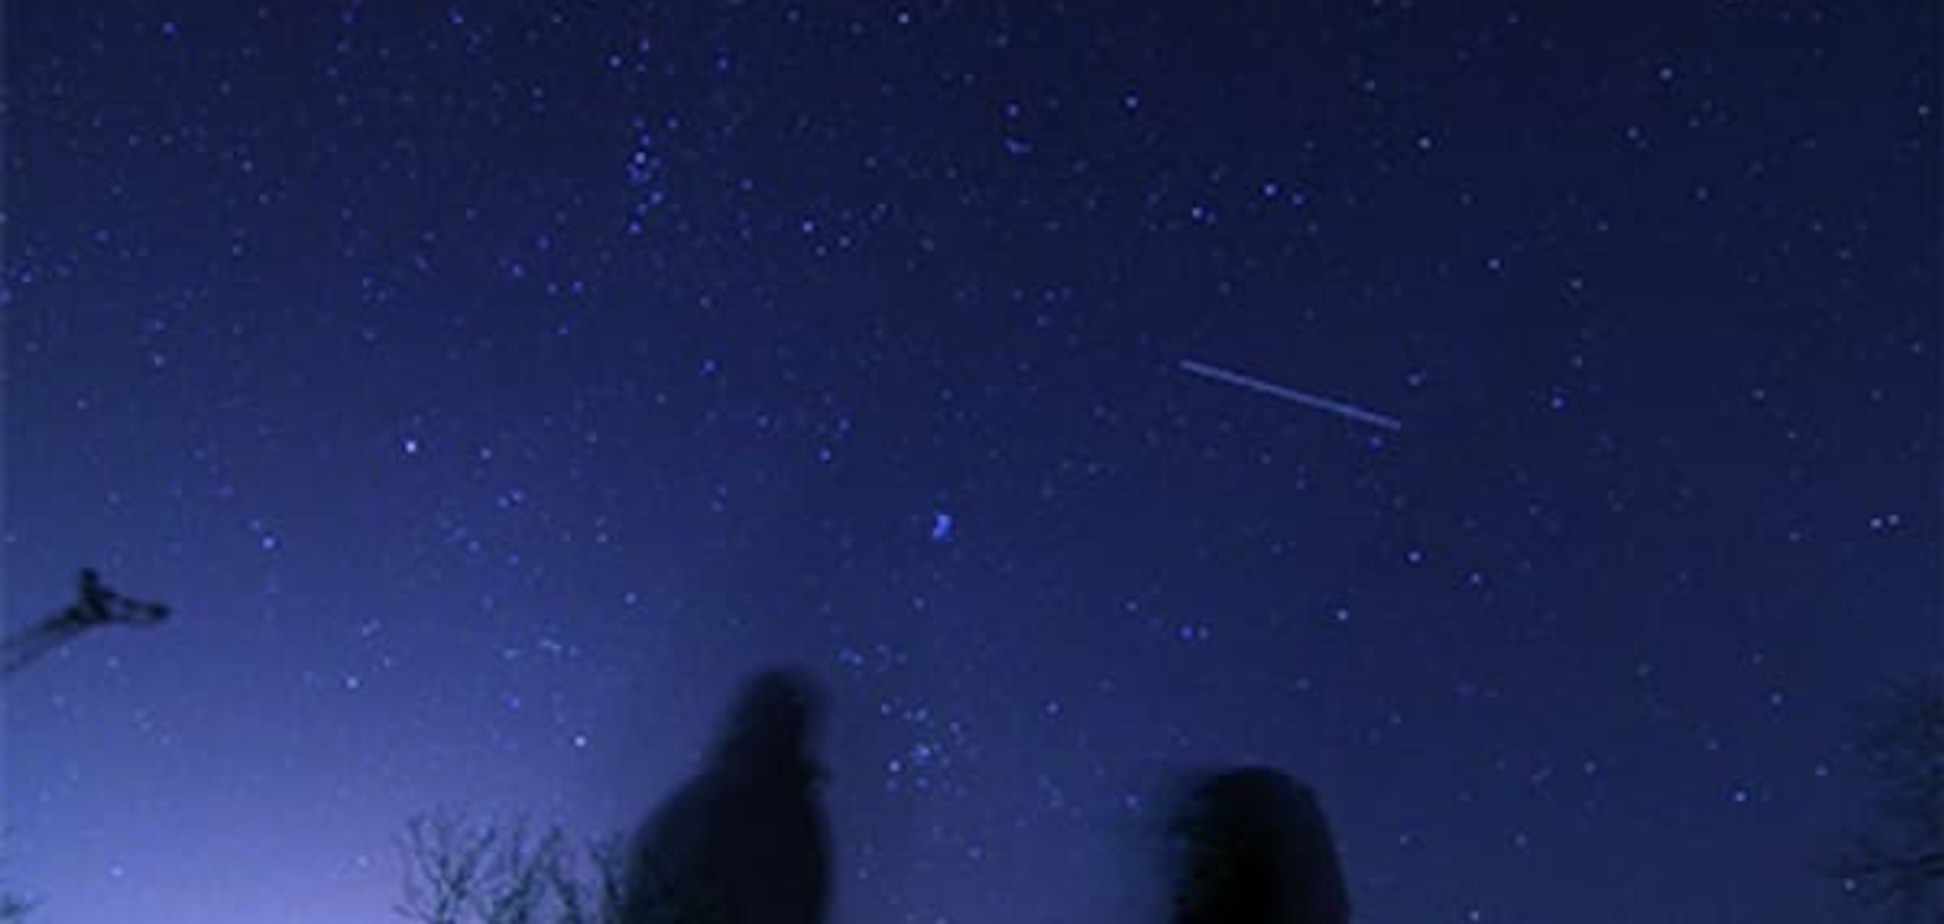 NASA: возле Земли пролетит огромный метеорит с непредсказуемой траекторией